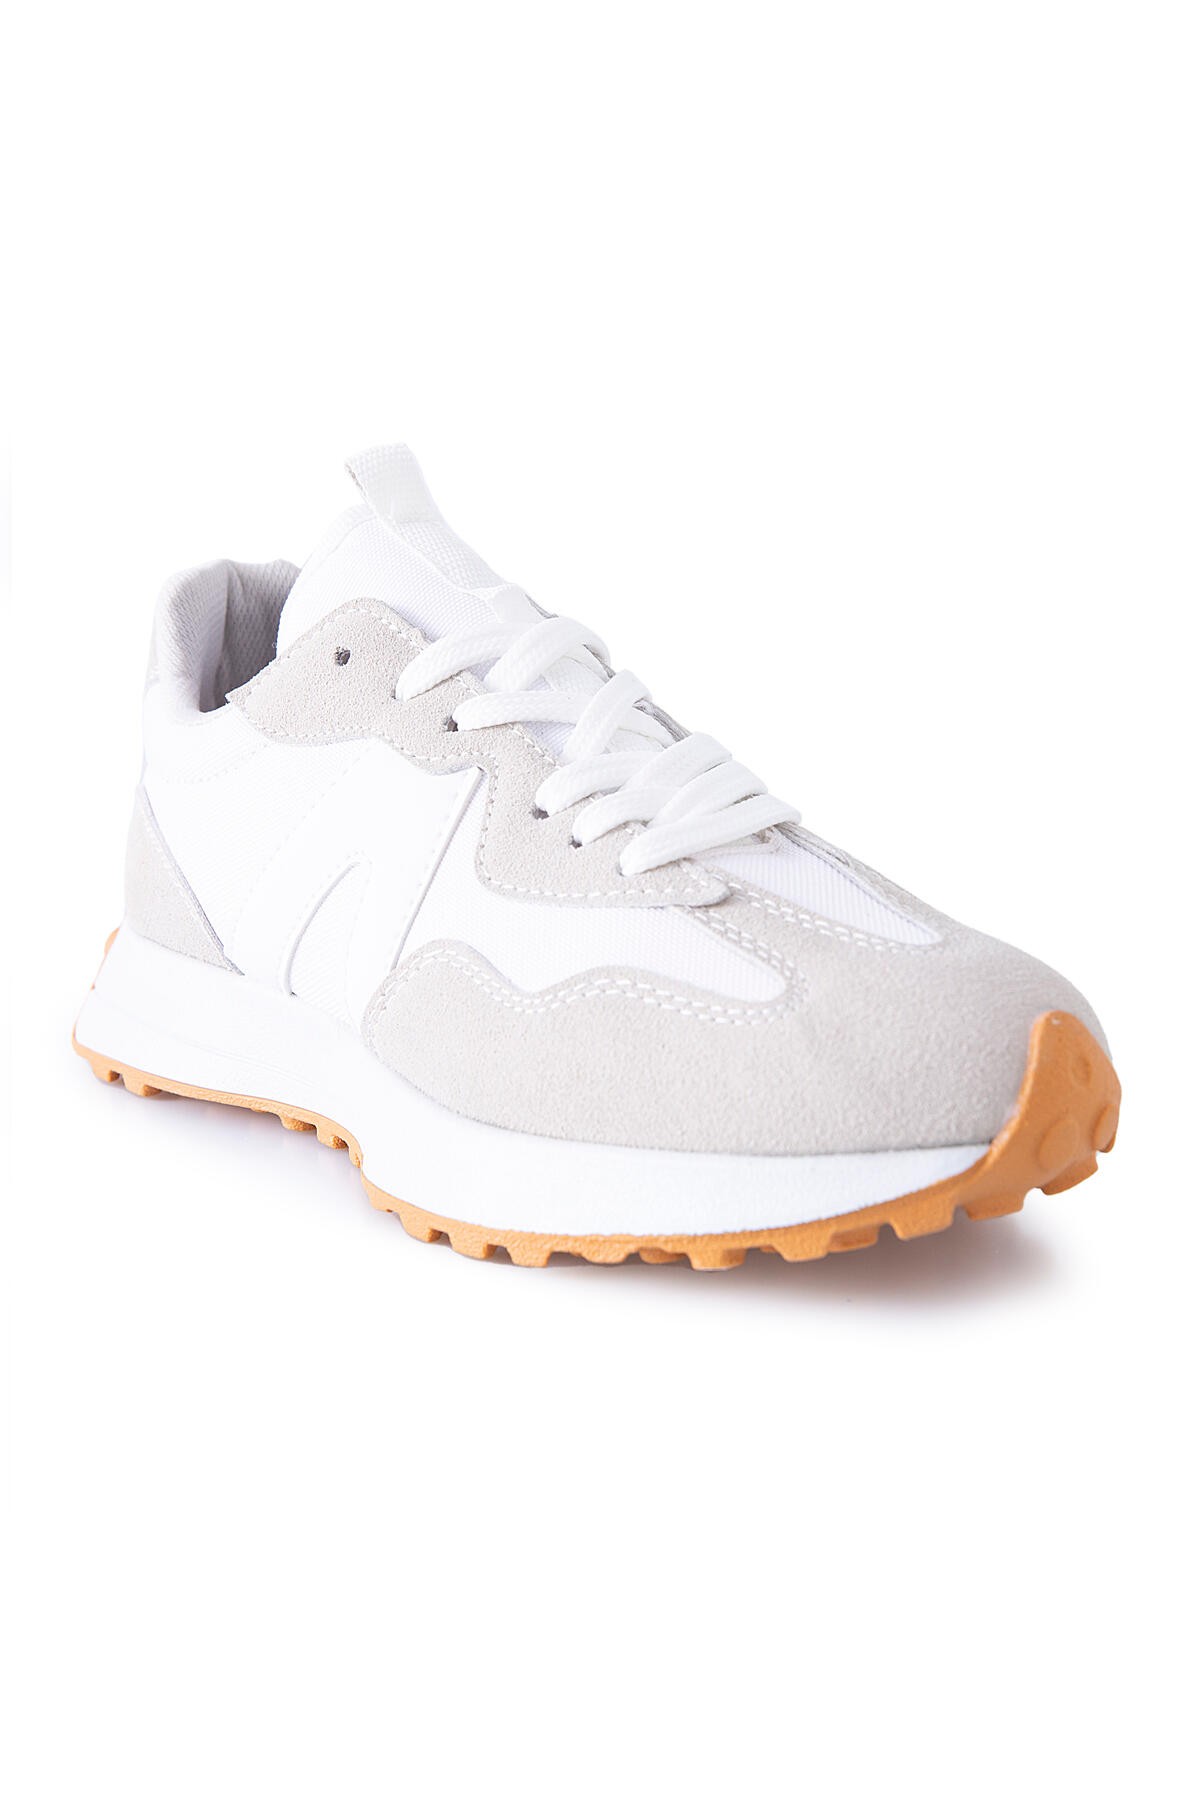 Beyaz Mantar Topuk Detaylı Bağcıklı Erkek Spor Ayakkabı - 89095